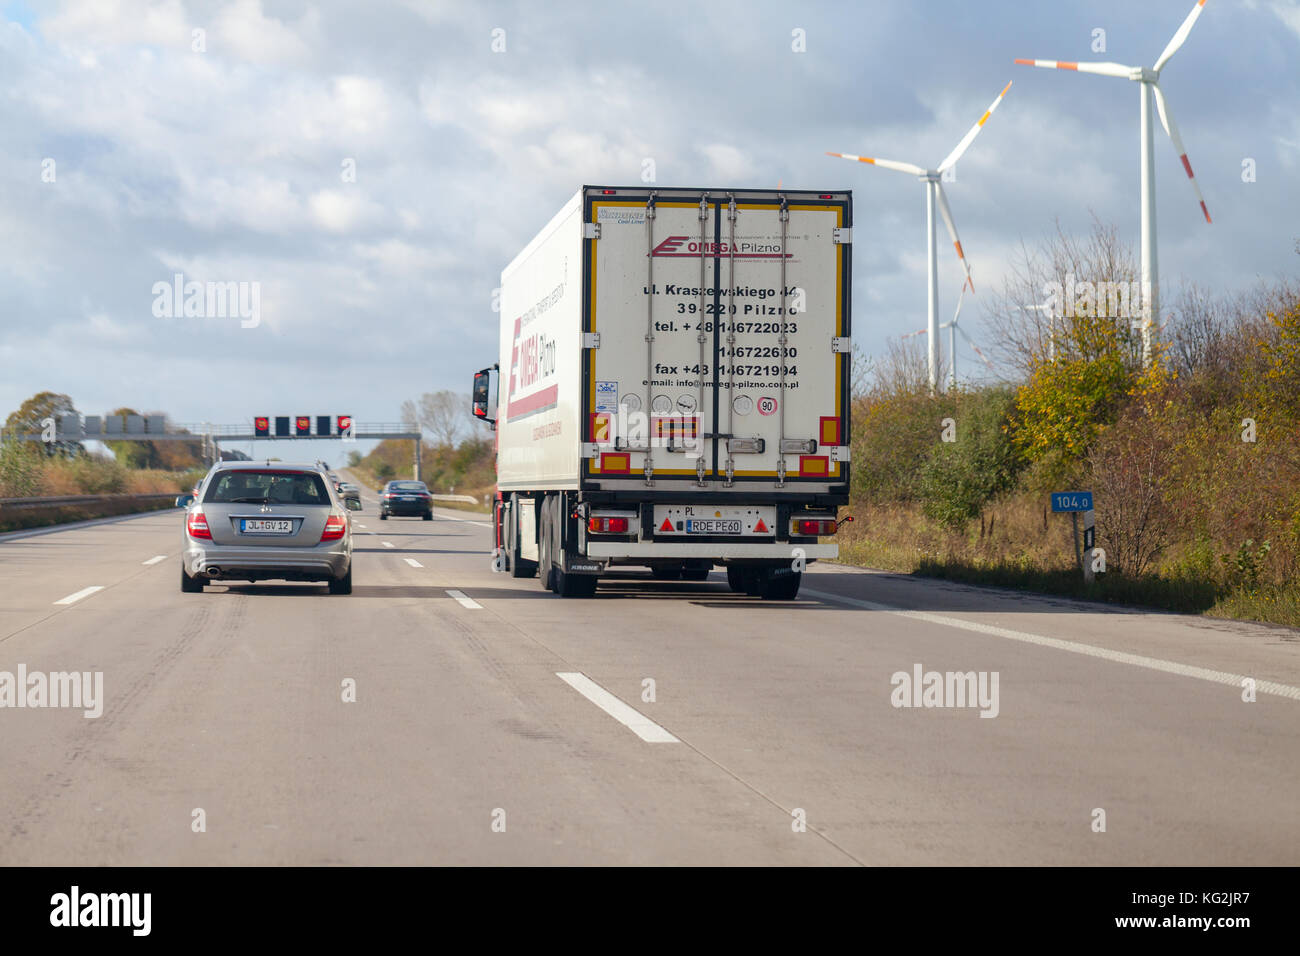 Braunschweig / Allemagne - 29 octobre 2017 : camion de transitaire polonaise pilzno omega durs sur autoroute allemande A2. Banque D'Images